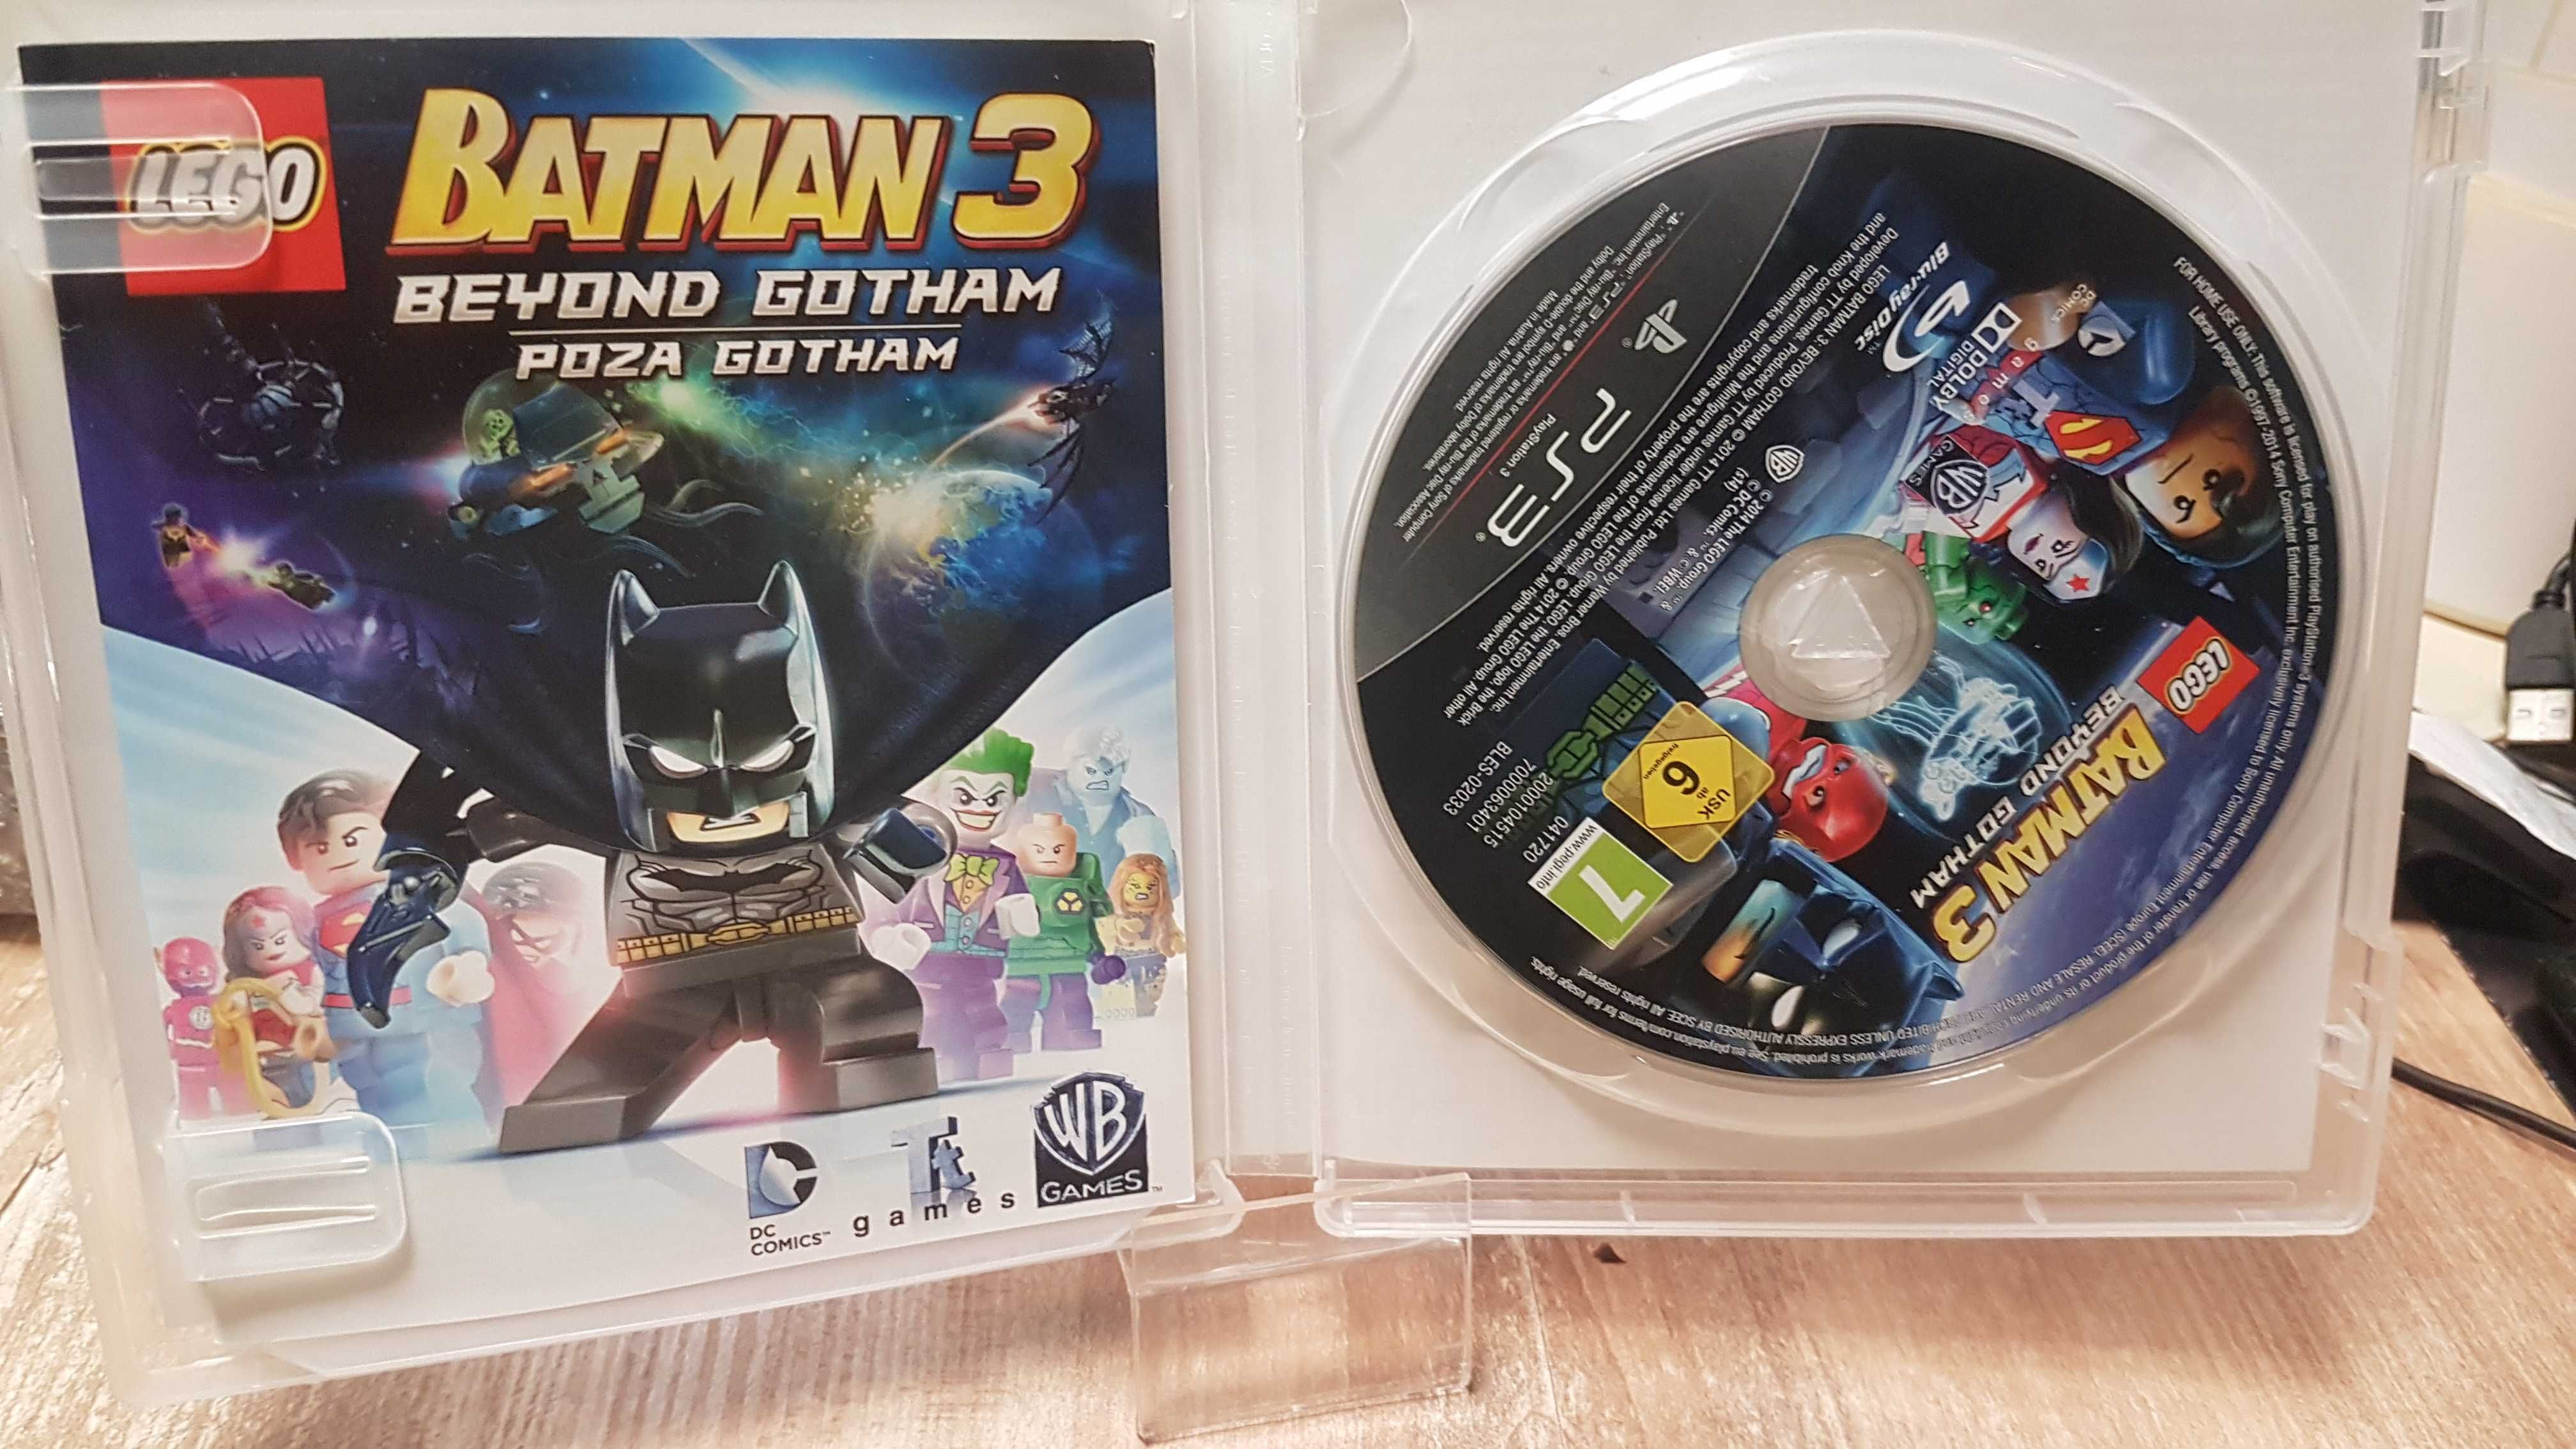 LEGO Batman 3: Poza Gotham PS3 Sklep/Wysyłka/Wymiana